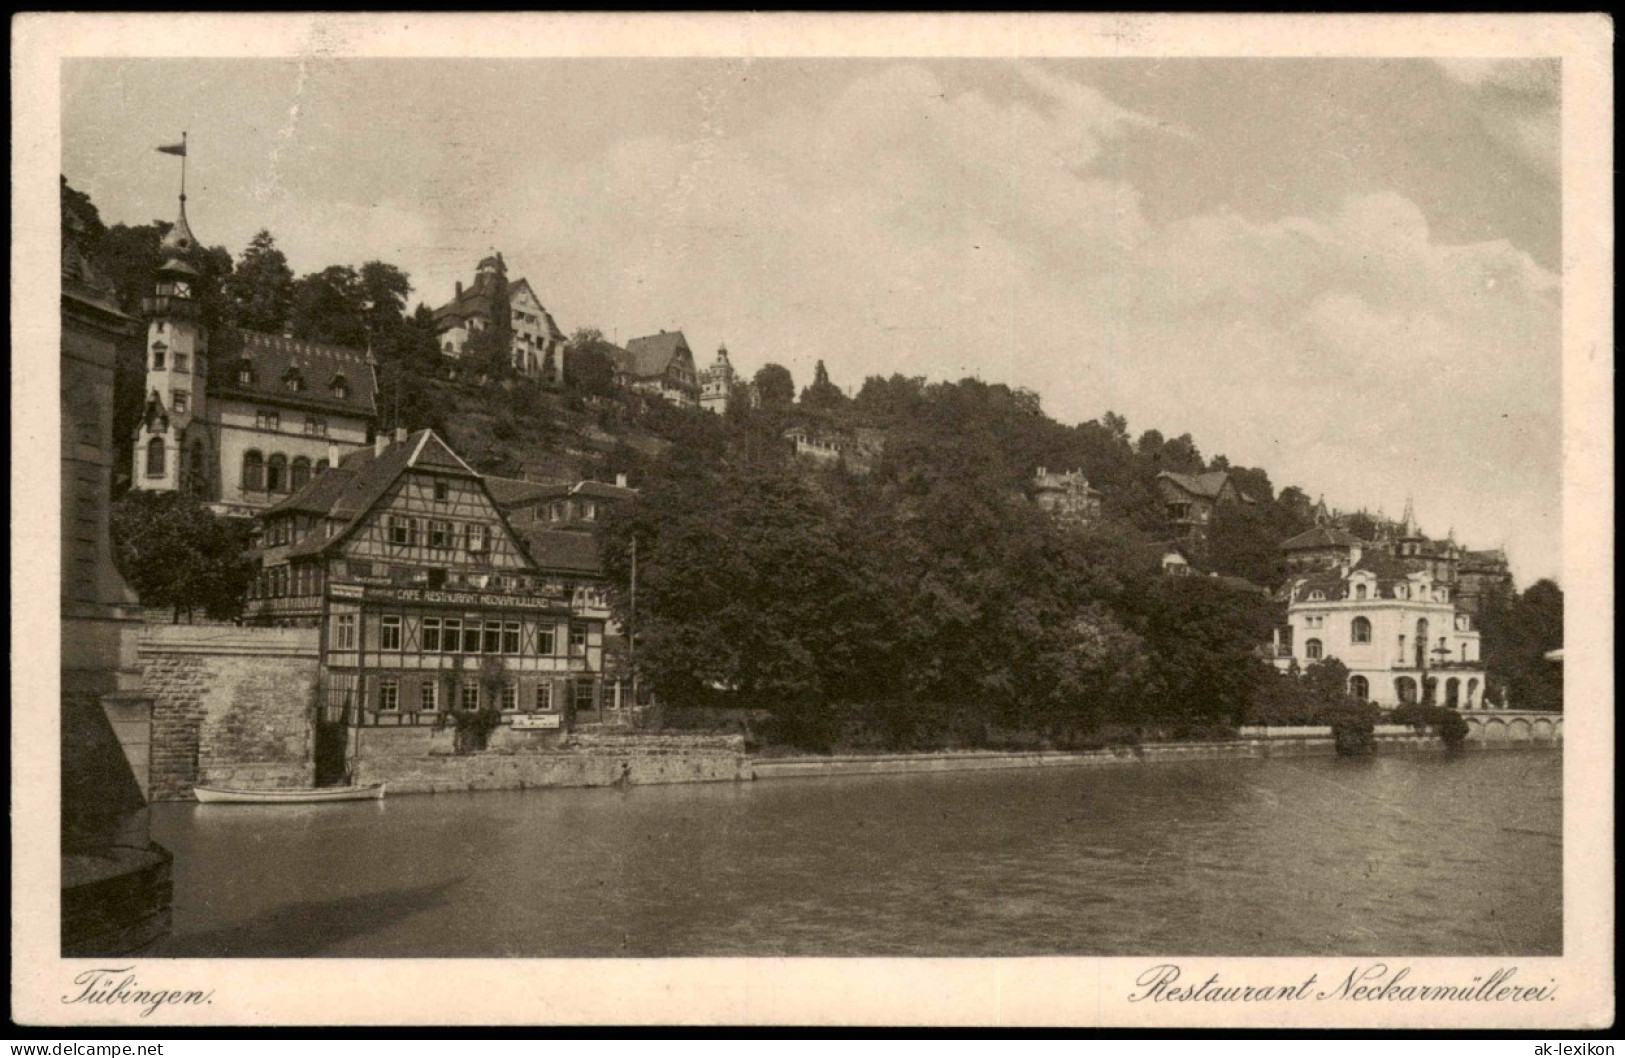 Ansichtskarte Tübingen Restaurant Neckarmüllerei. 1927 - Tuebingen